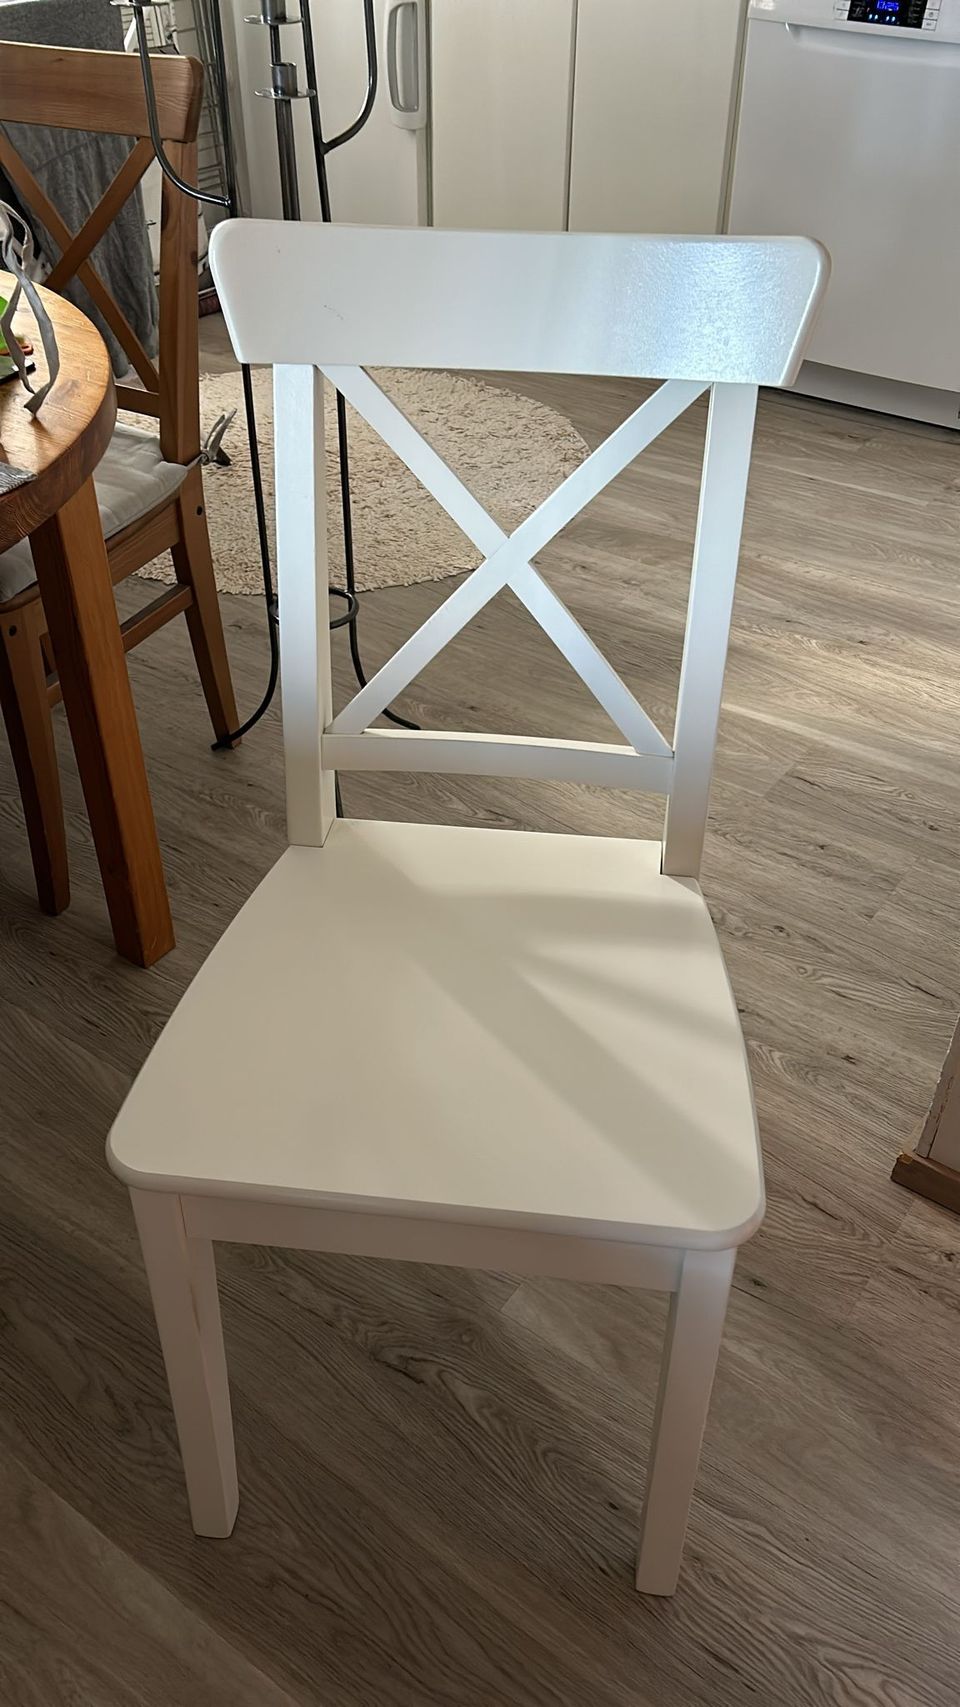 Keittiön tuoleja IKEA (2 ruskeaa, 2 valkoista)